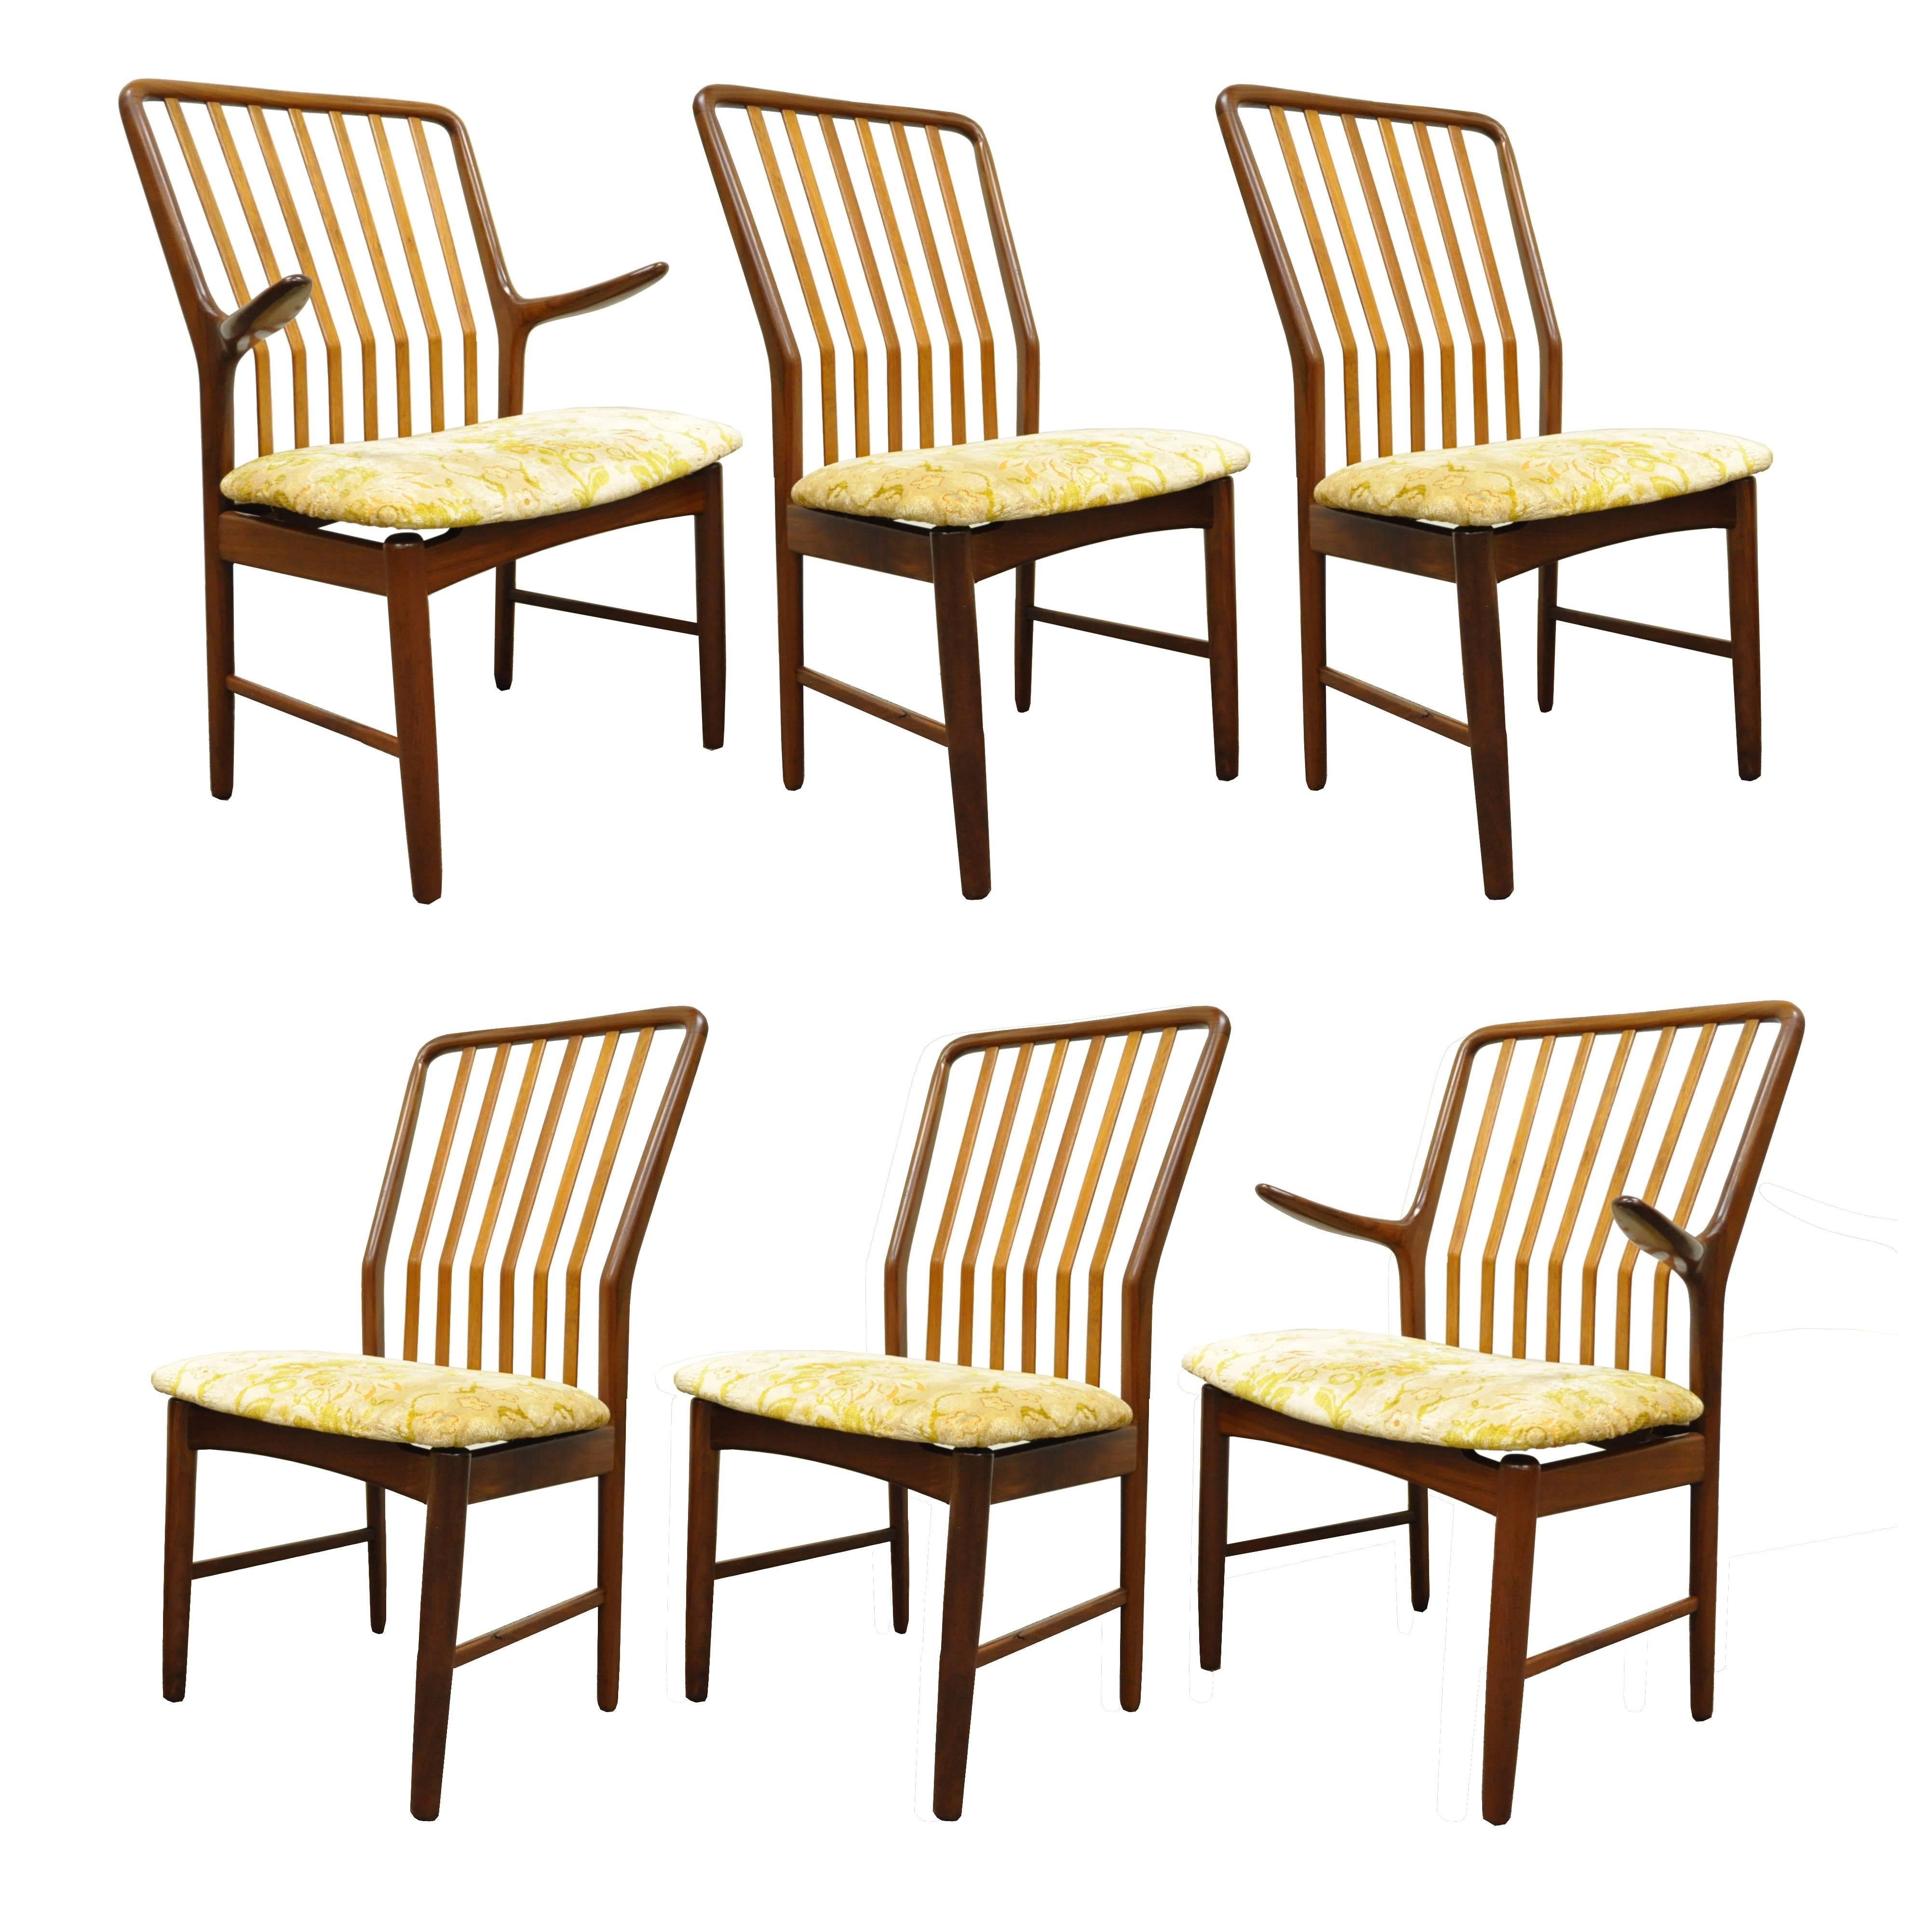 Superbe ensemble de six chaises de salle à manger en teck massif sculpté, de style moderne danois du milieu du siècle, conçues par Svend A. Madsen et importées par Moreddi. L'ensemble comprend deux fauteuils et quatre chaises d'appoint, tous dotés